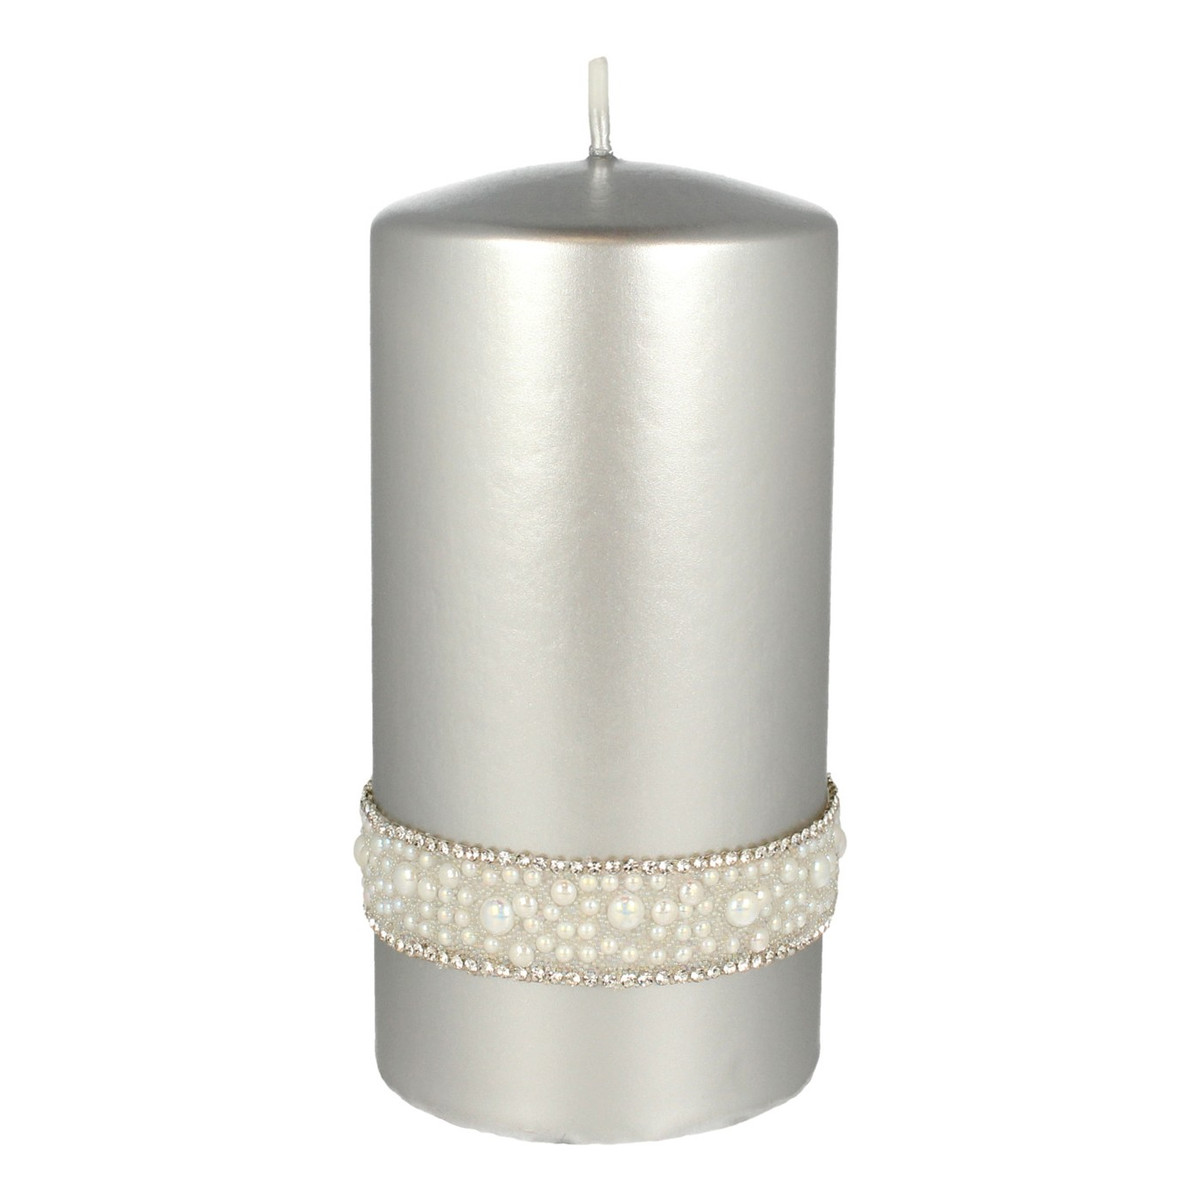 Artman Candles Crystal Opal Pearl Świeca ozdobna walec średni srebrny 1szt